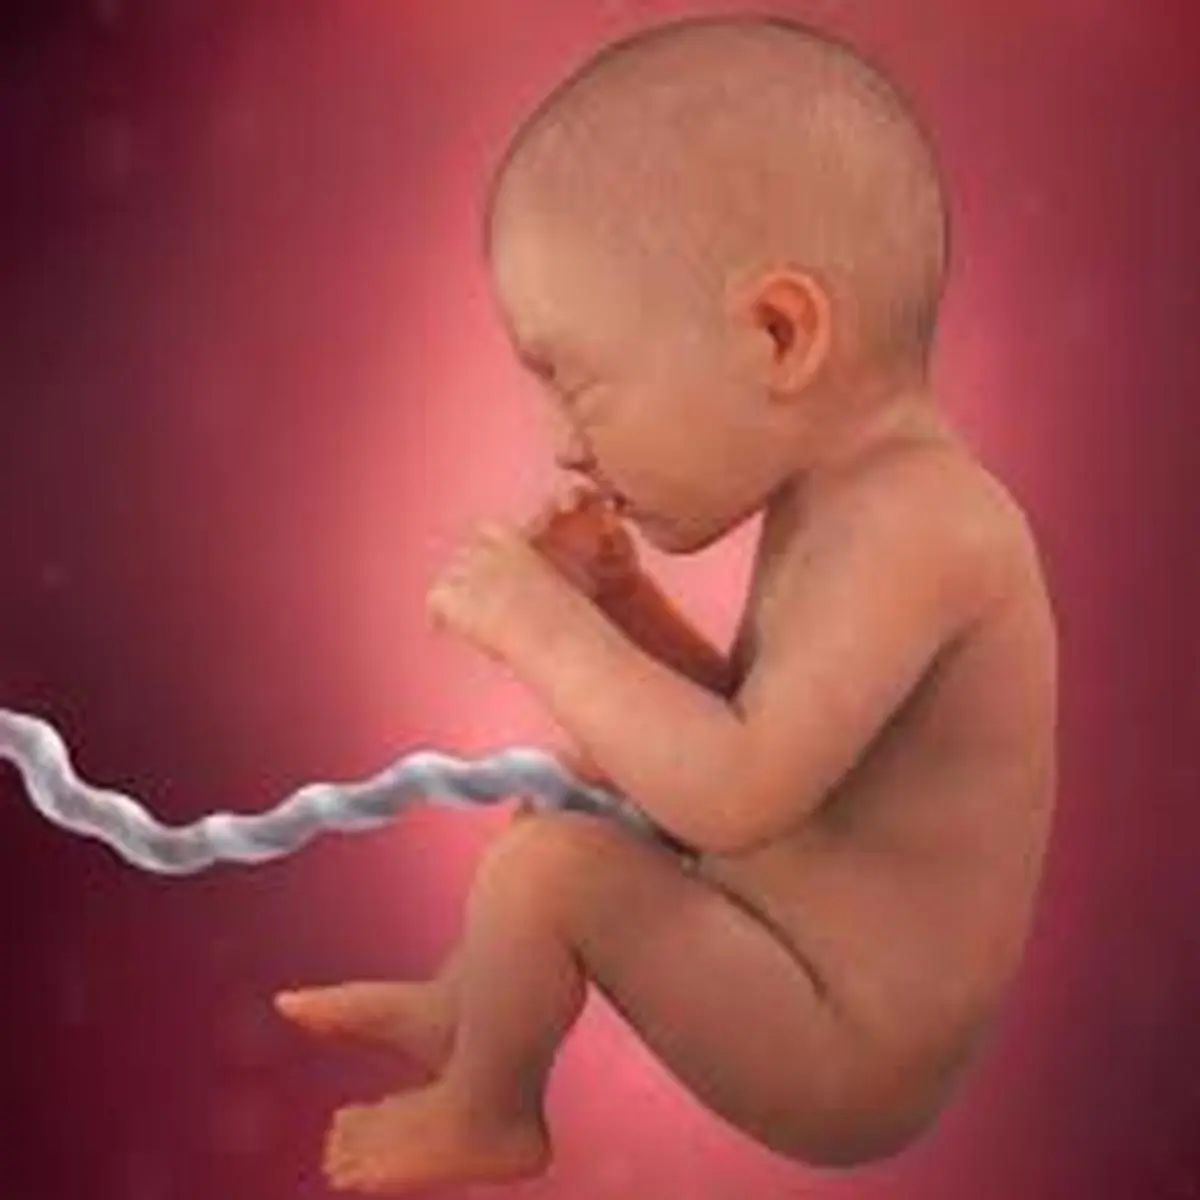 کوبیدن میخ در سر زن باردار برای پسرزایی! 